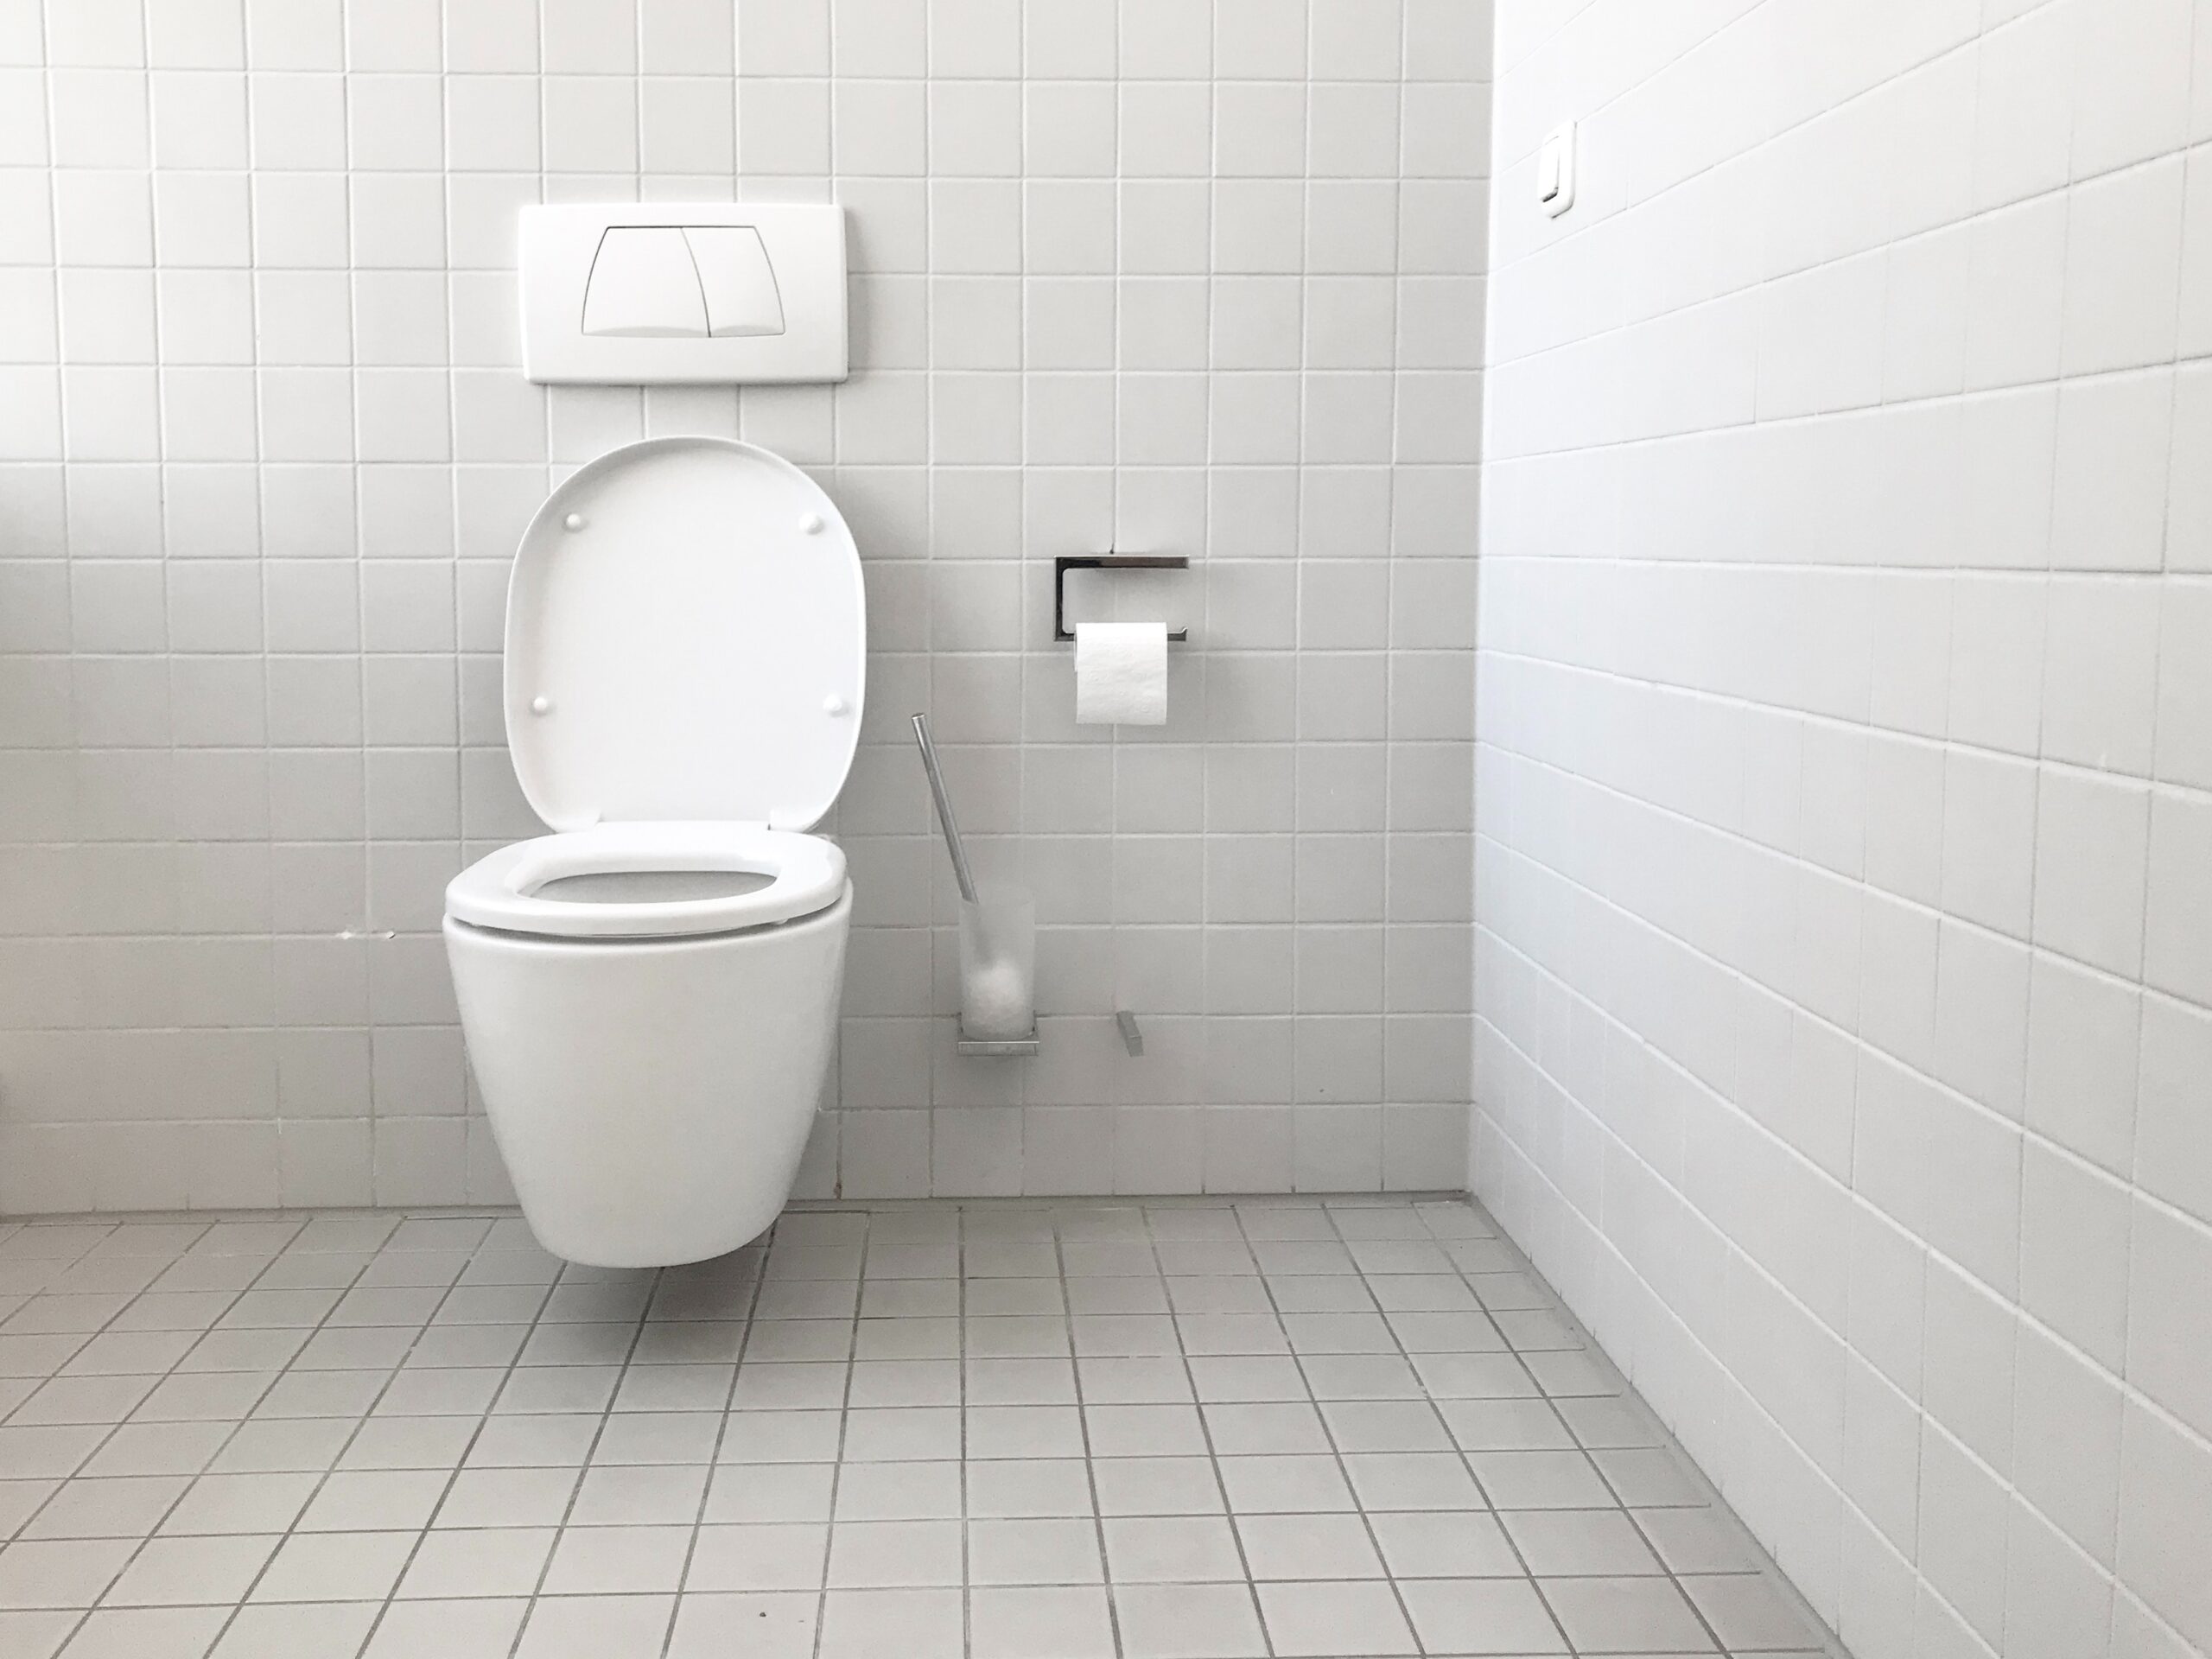 A toilet on a bathroom wall